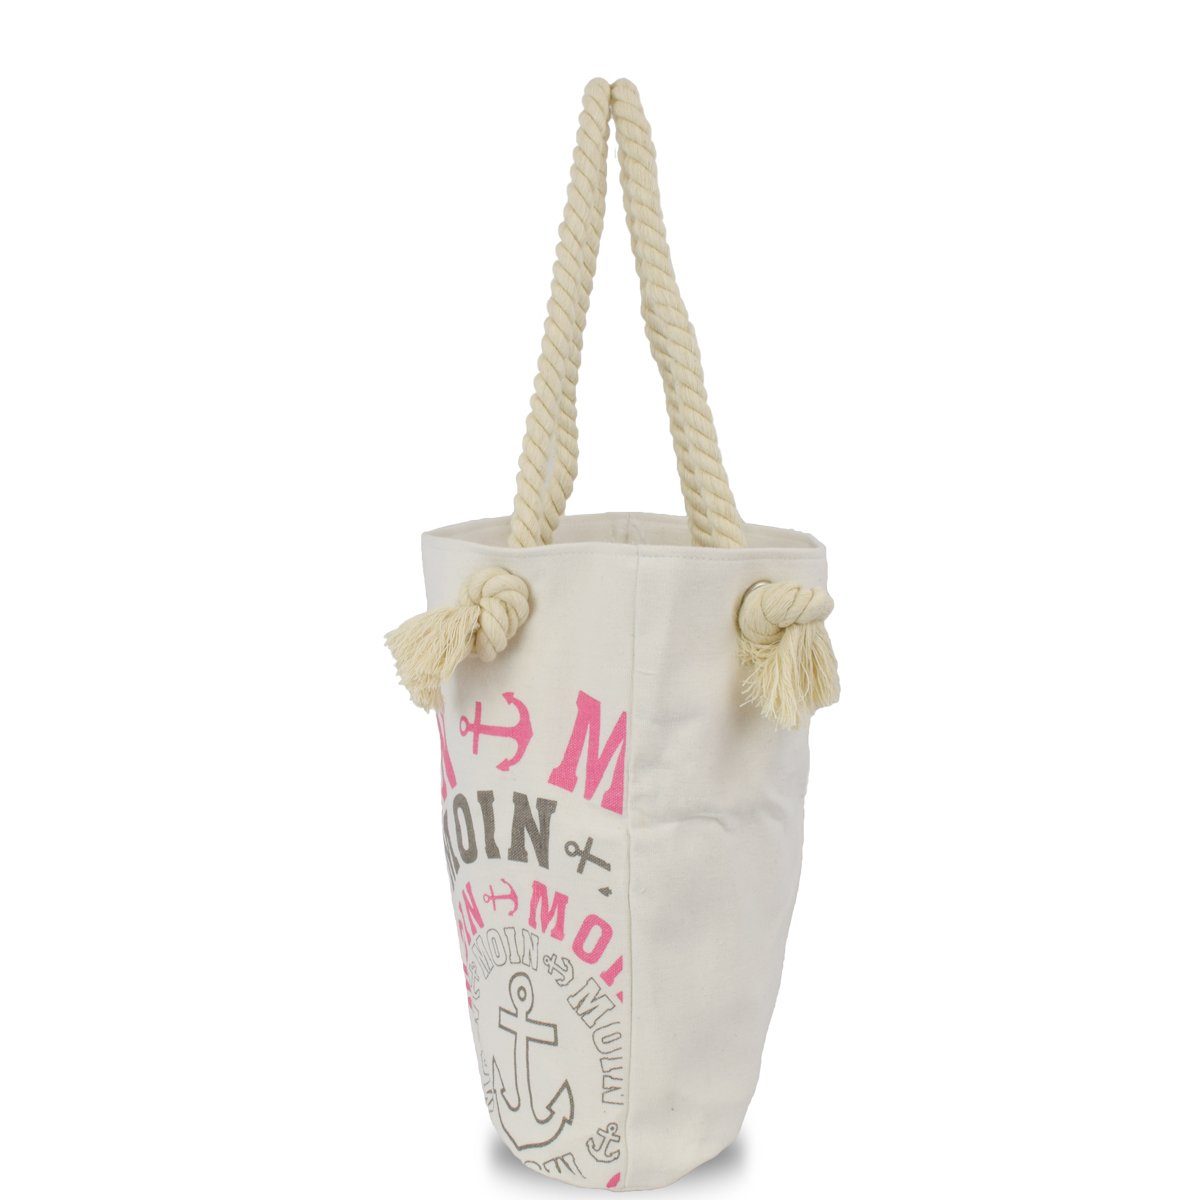 Sonia Originelli Shopper Reißverschluss "MOIN" mit City Tasche grau-rosa Innentasche Bag, Umhängetasche Einkaufstasche kleine